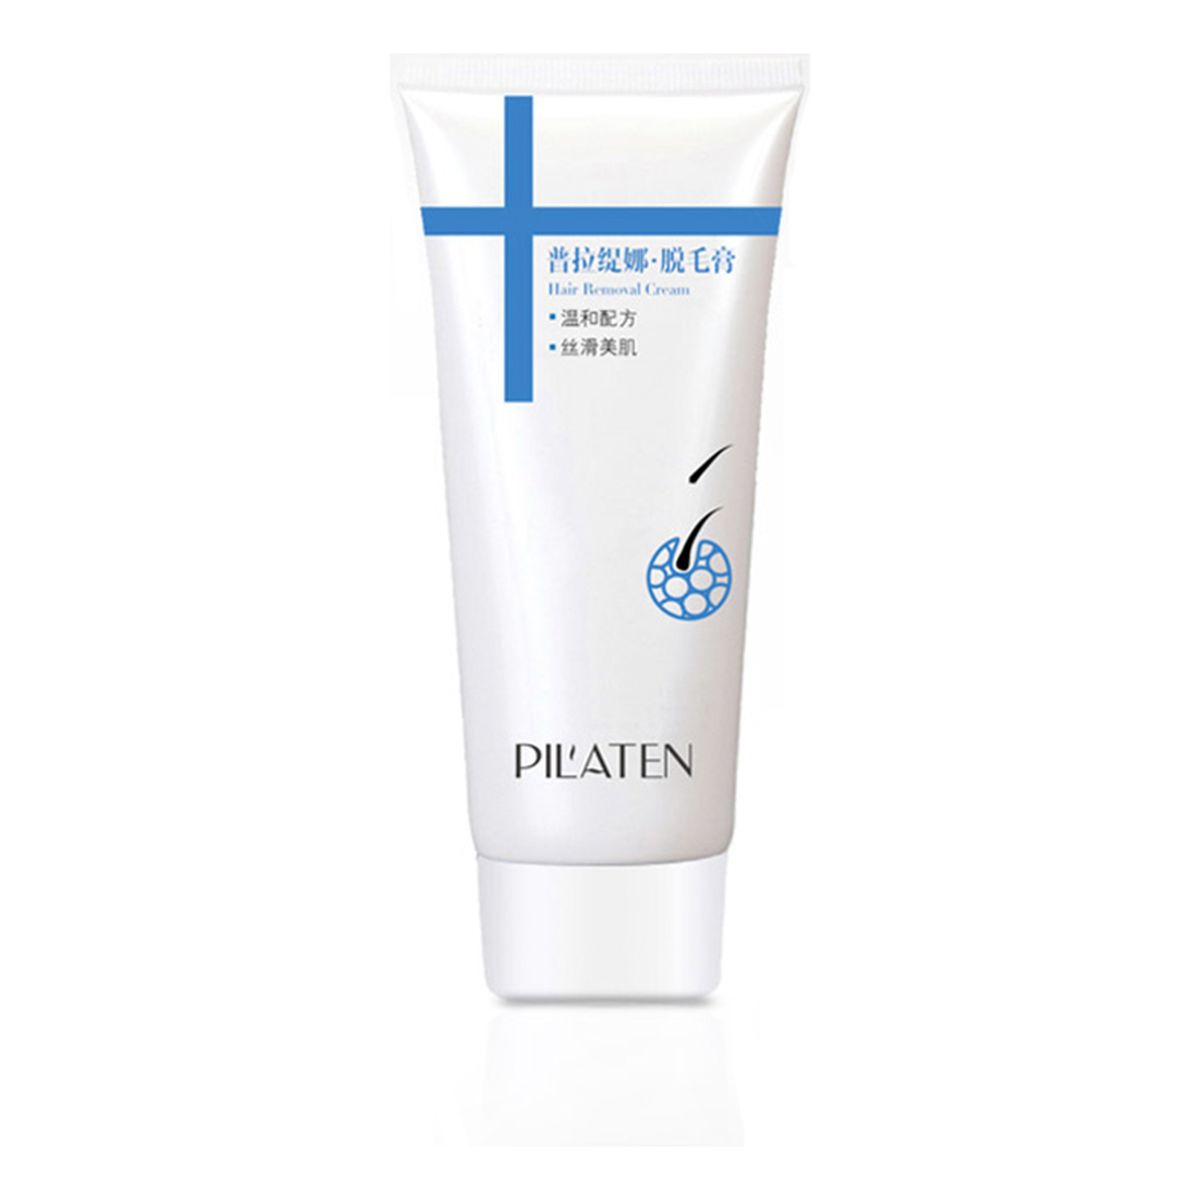 Pilaten Hair Removal Cream krem do depilacji 100g